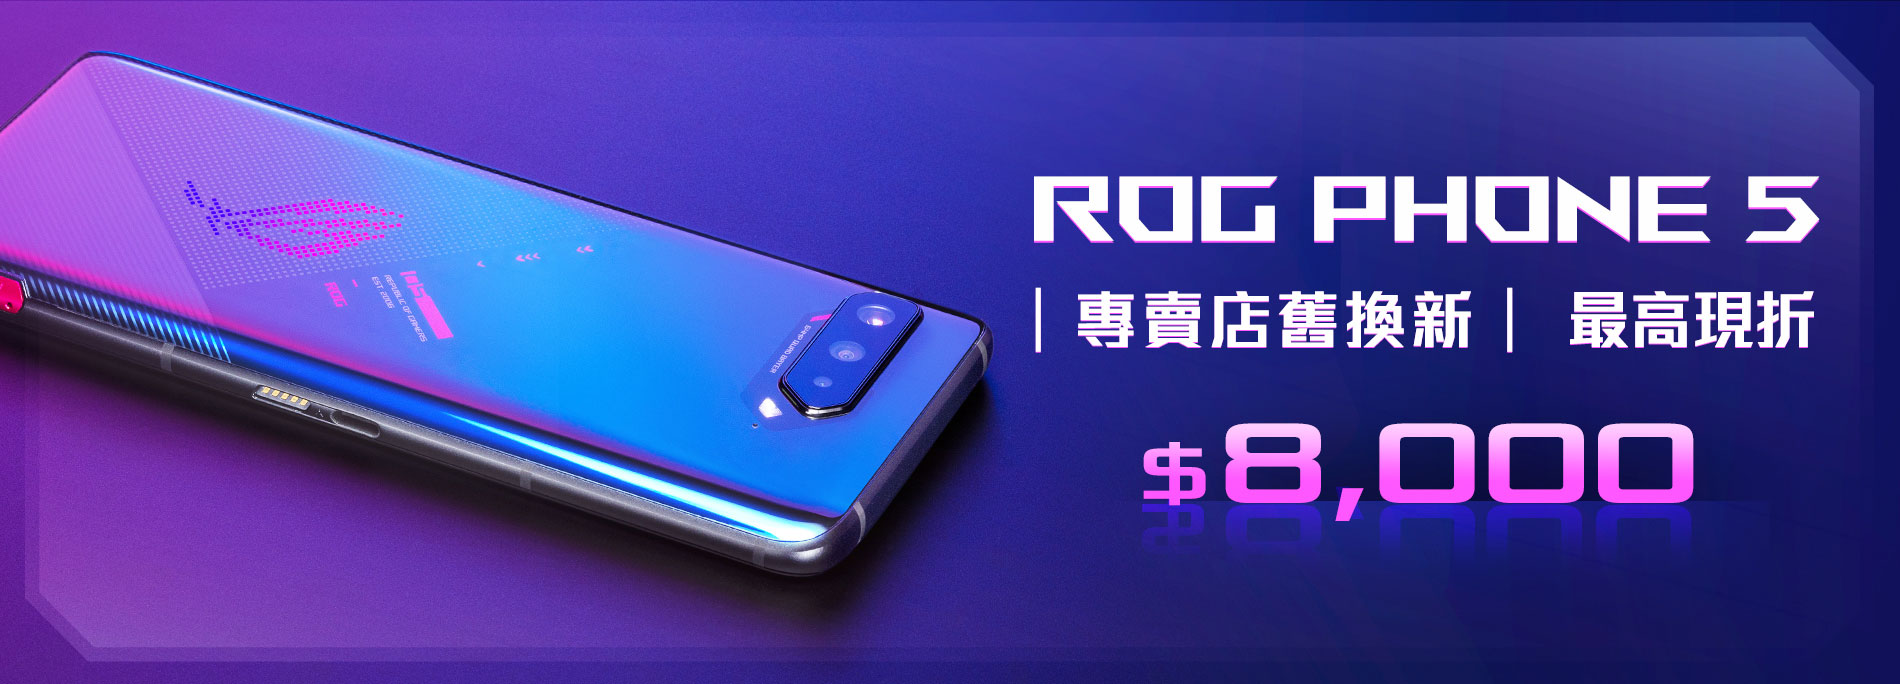 【舊換新】ROG Phone 5 舊換新，最高現折 $8,000